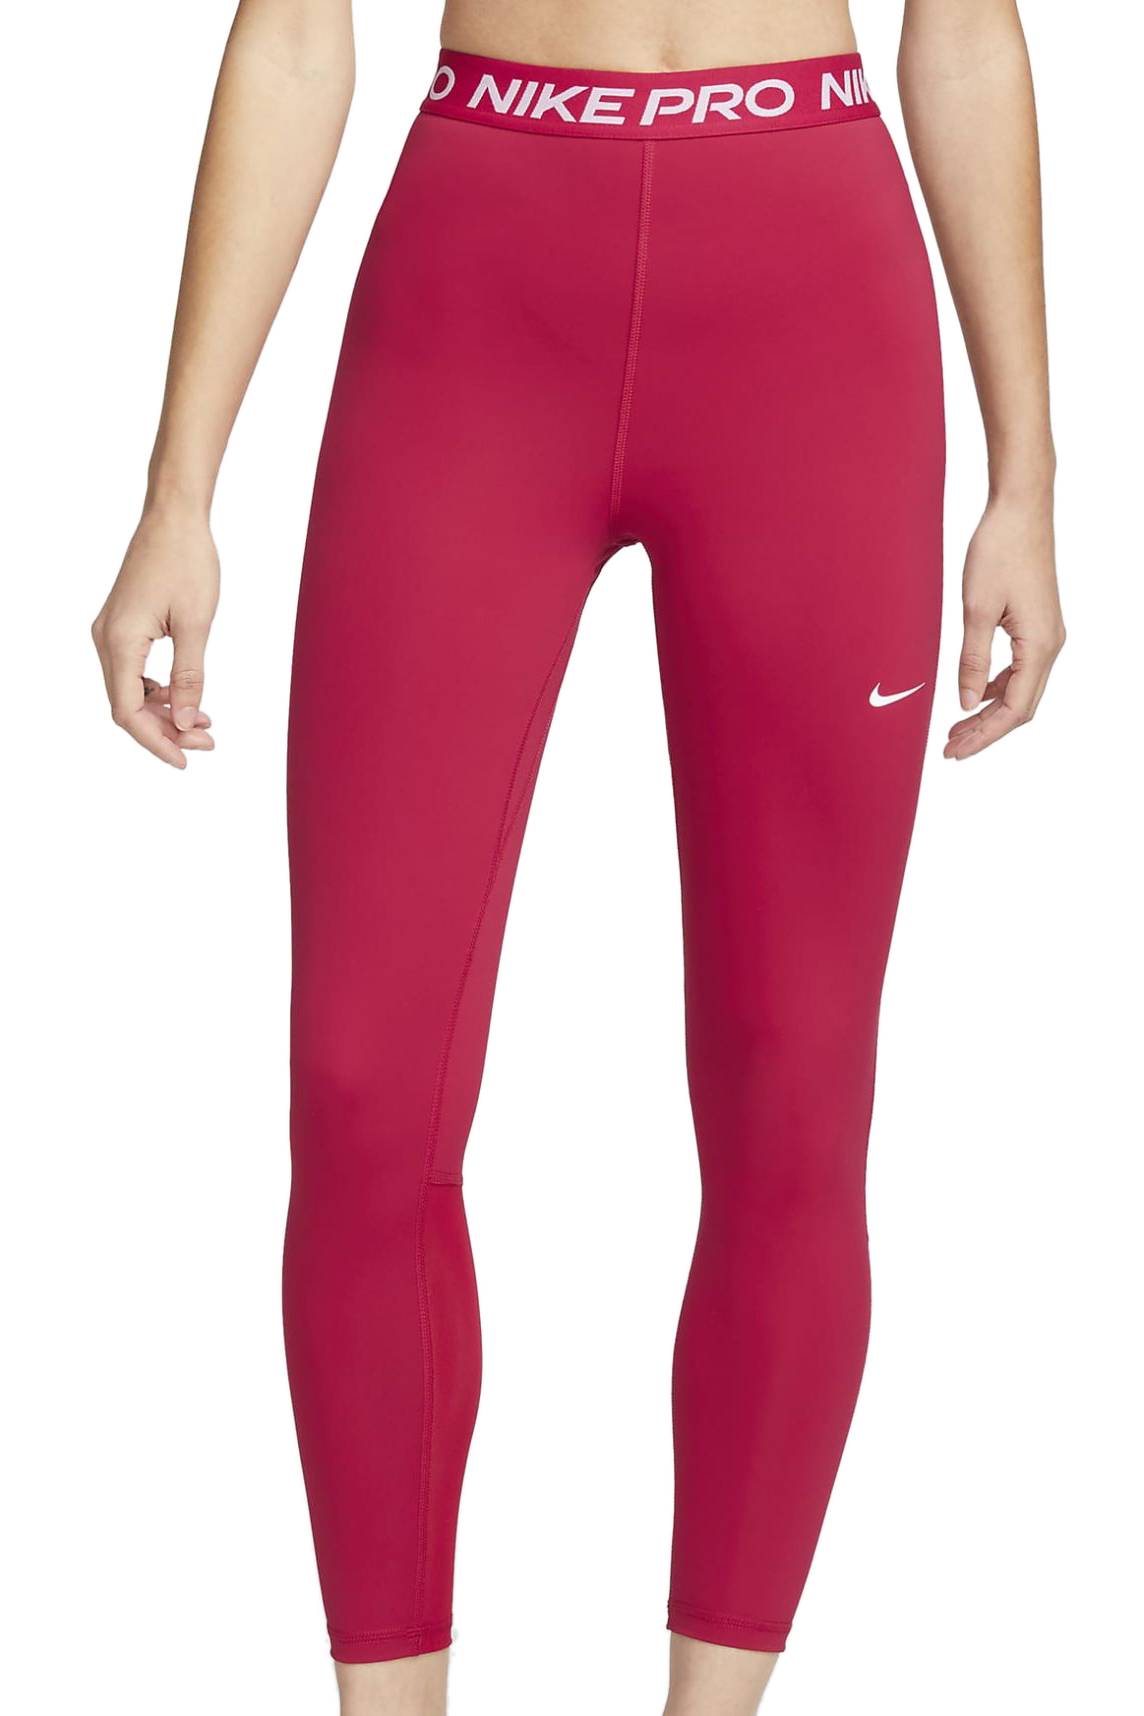 Women's leggings Nike Pro 365 Tight 7/8 Hi Rise W - mystic